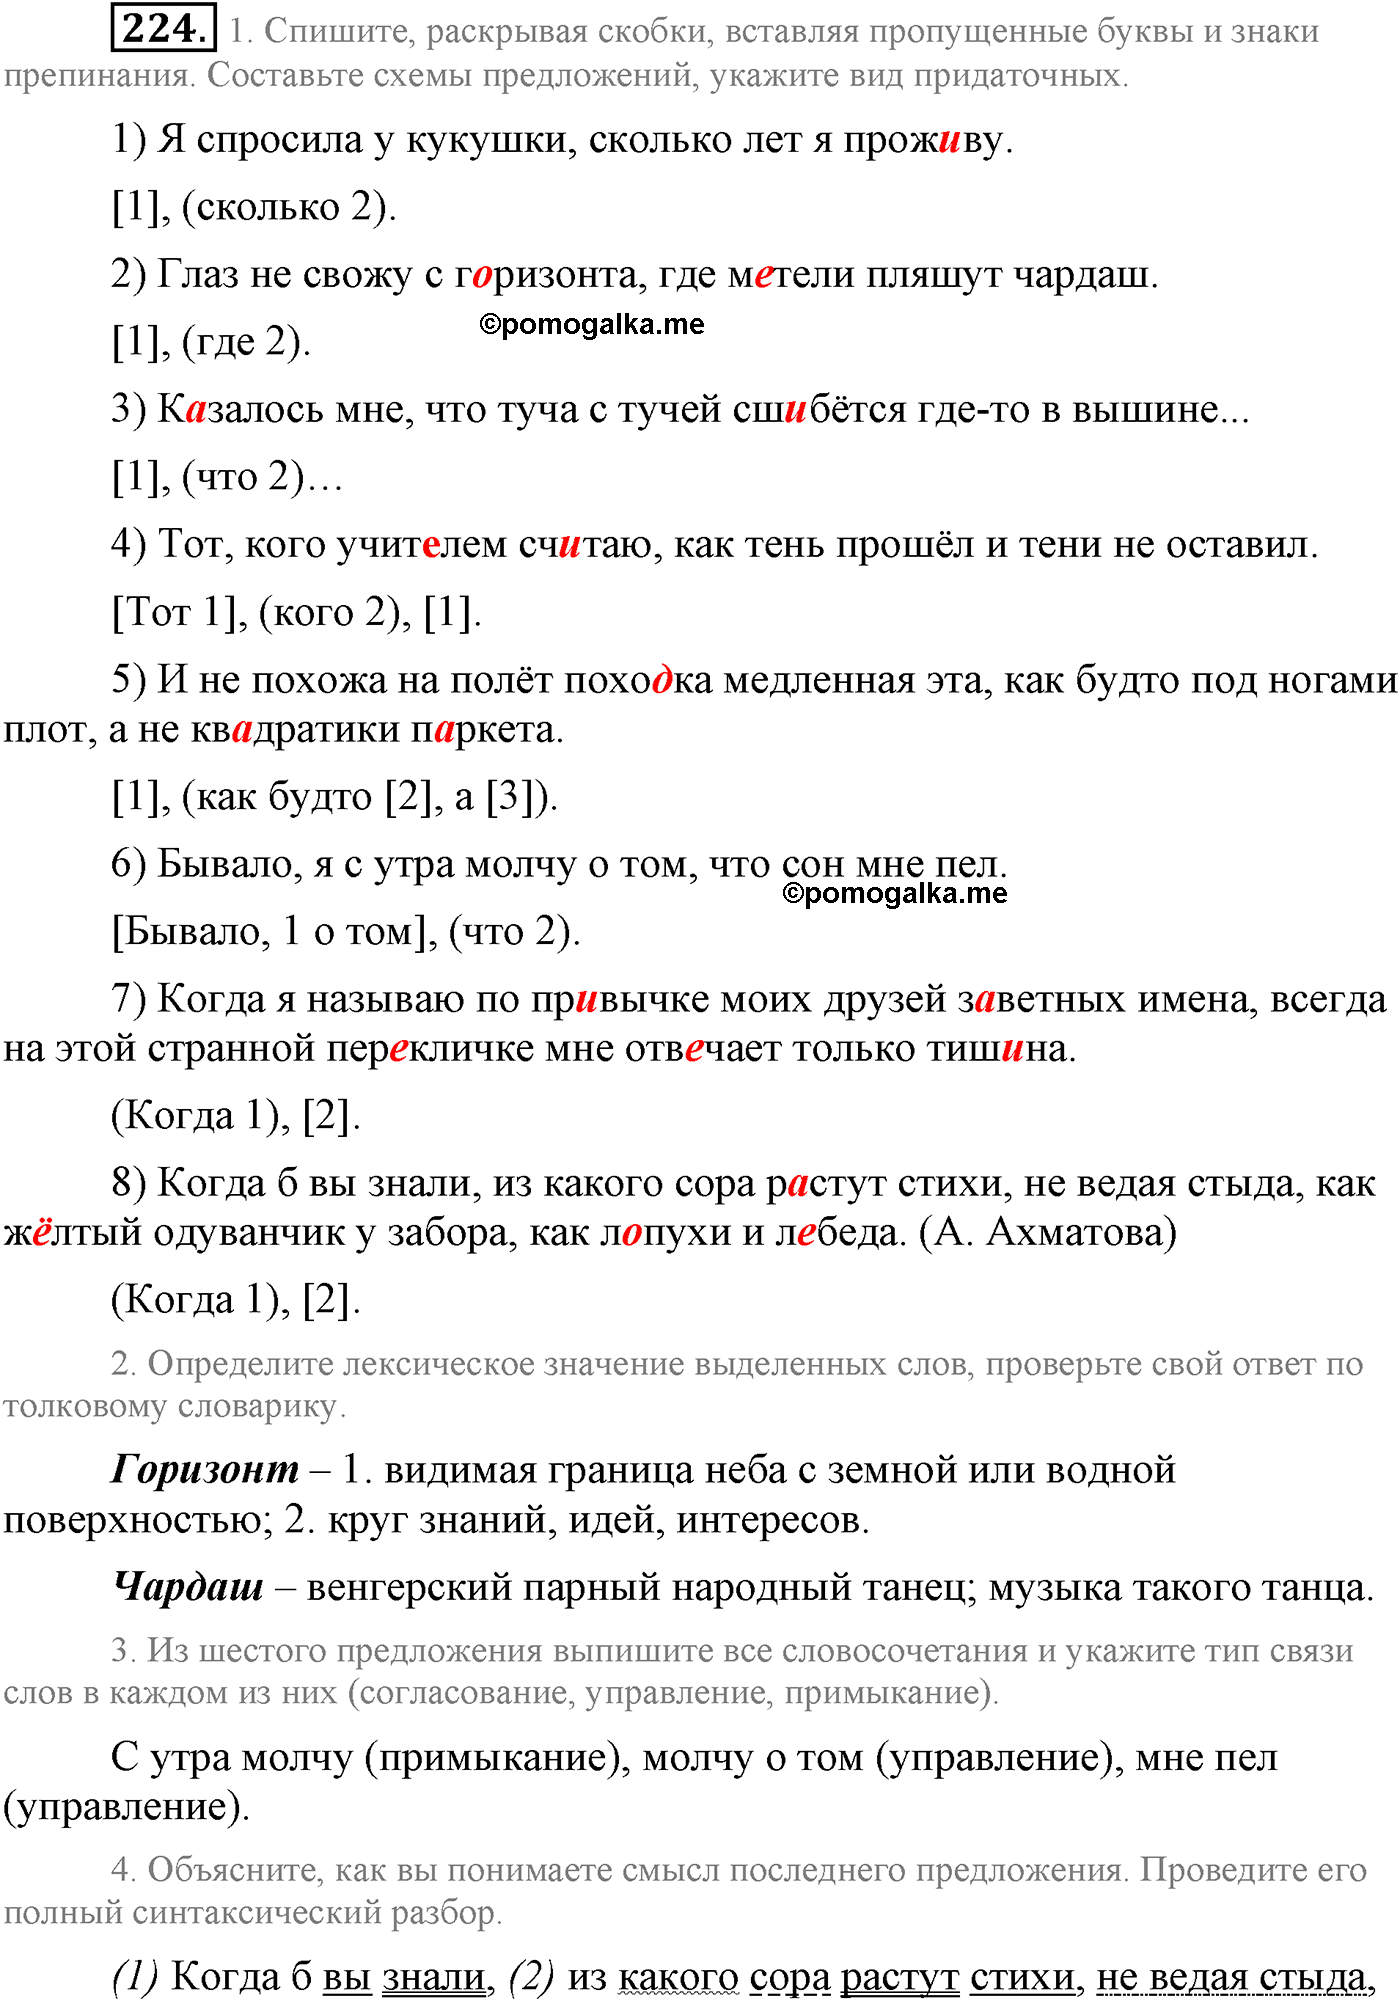 упражнение №224 русский язык 9 класс Львова